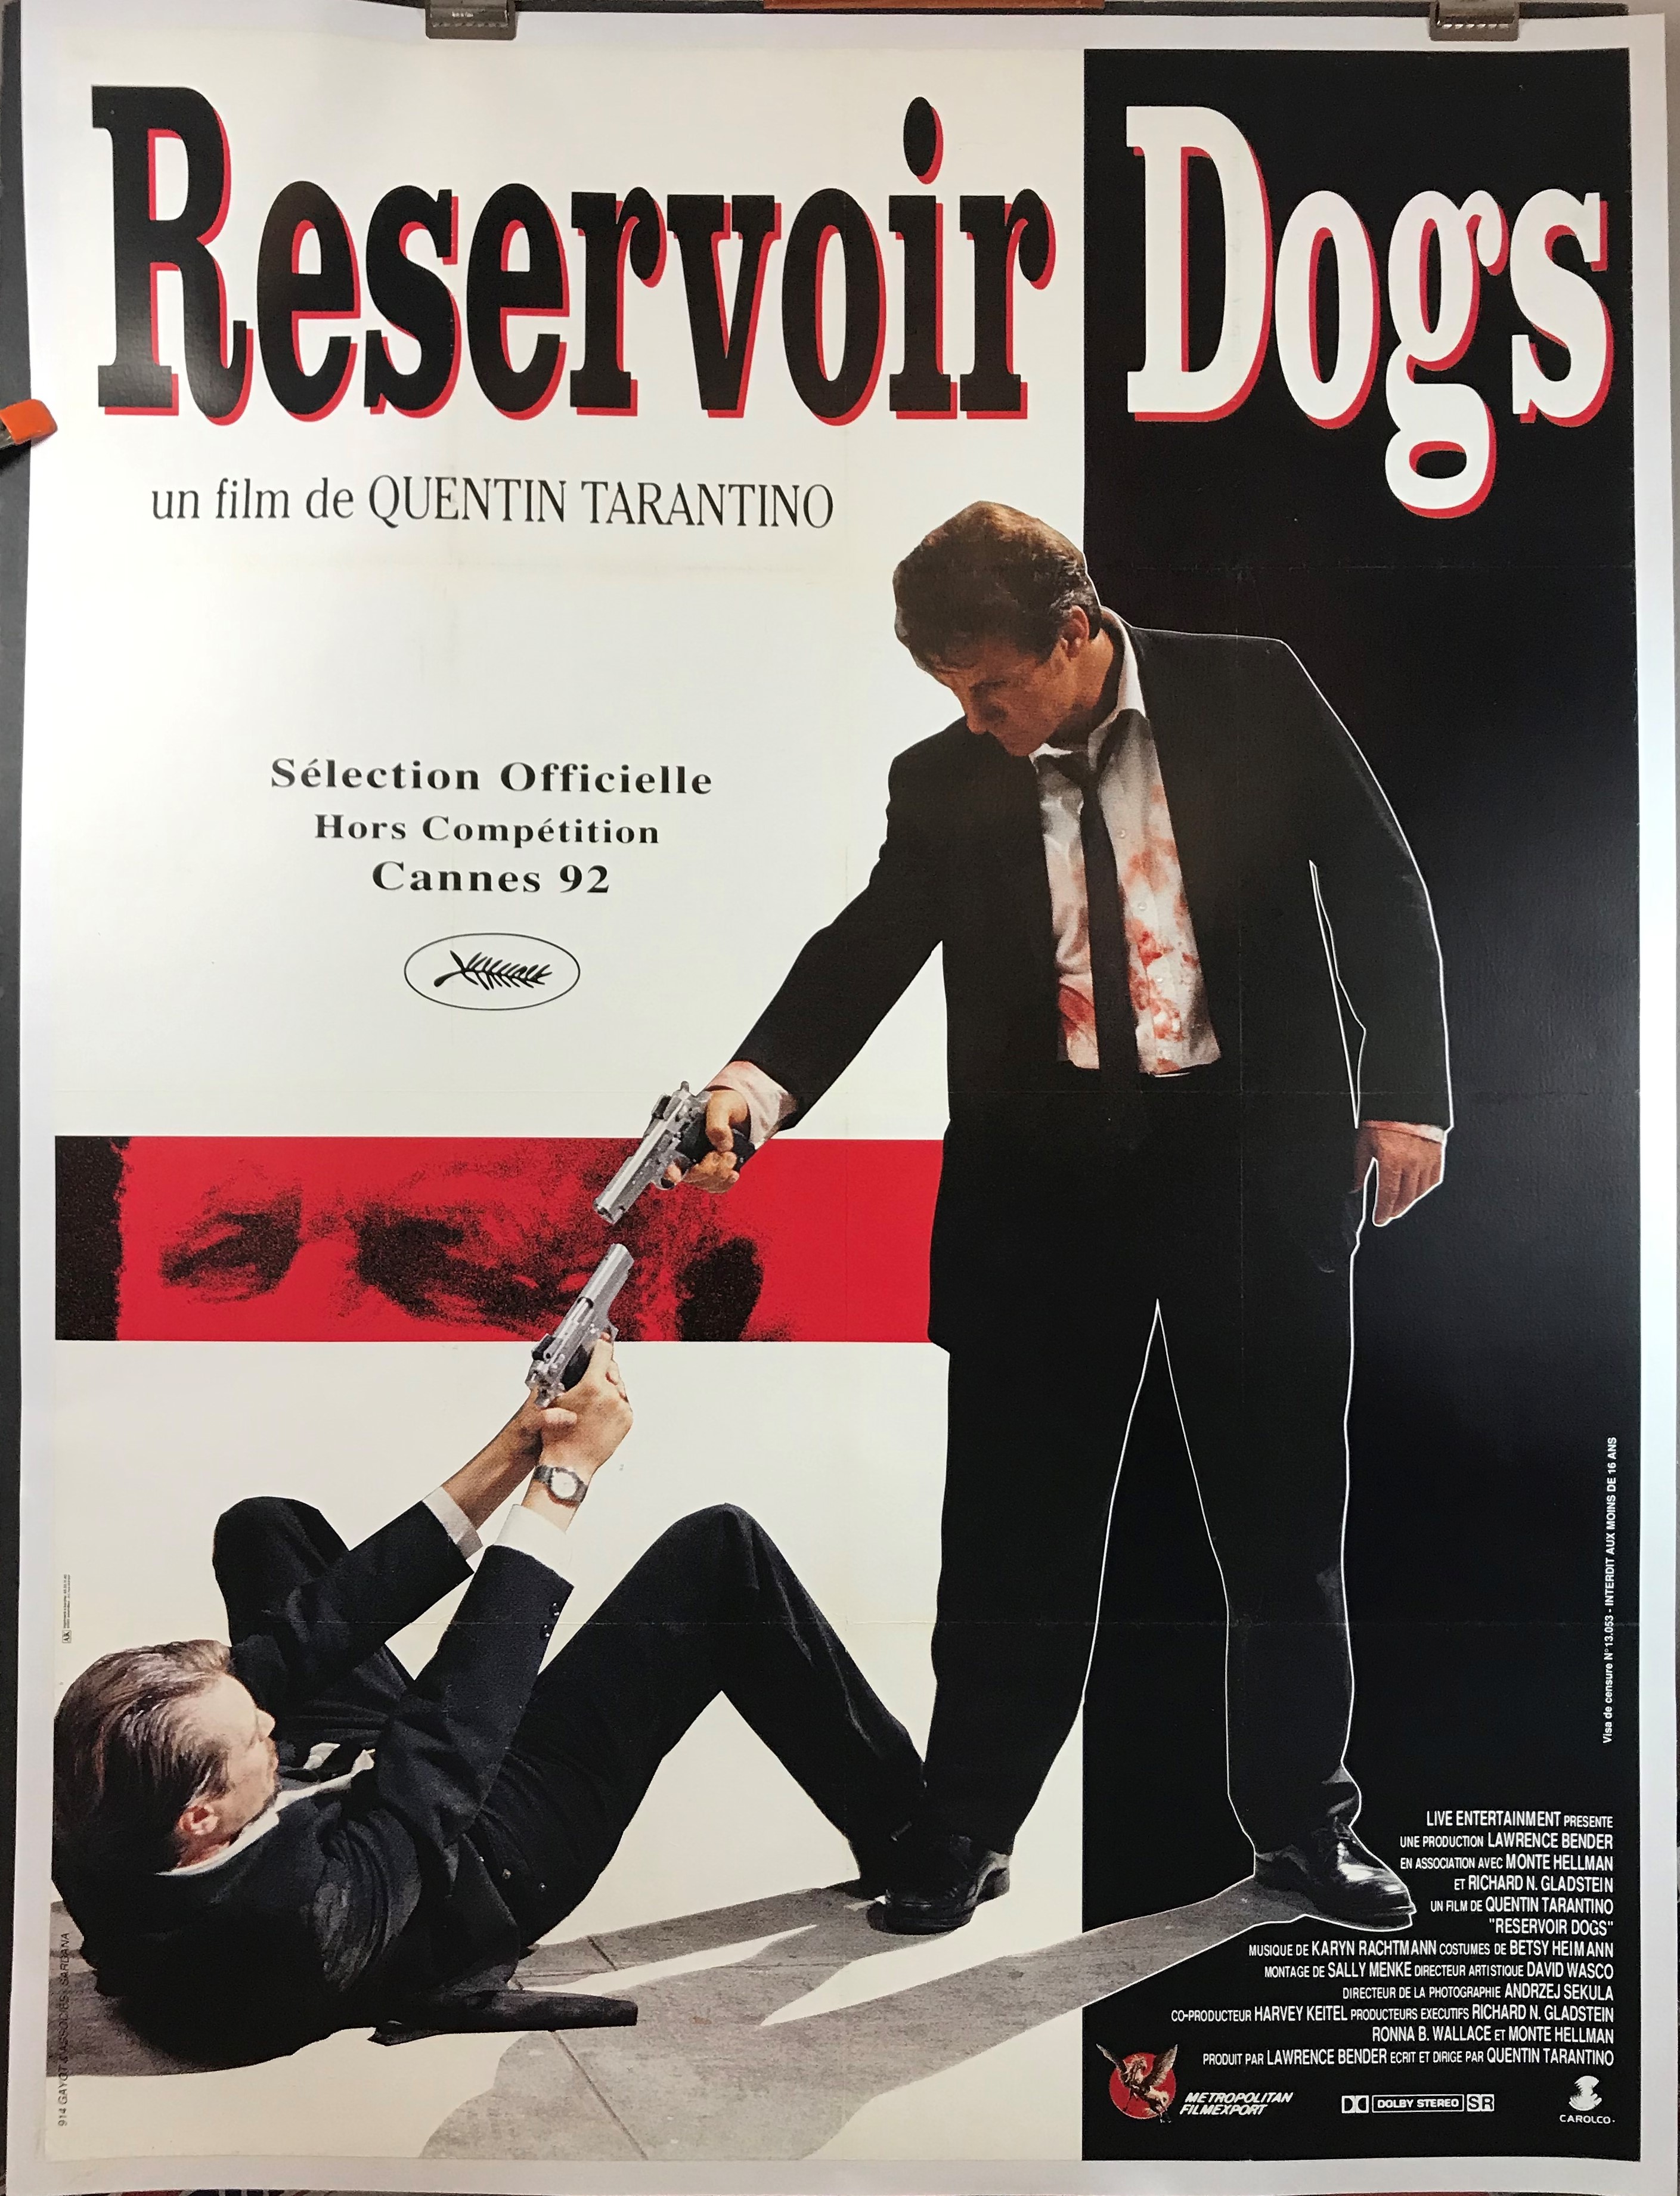 resizor dogs movie